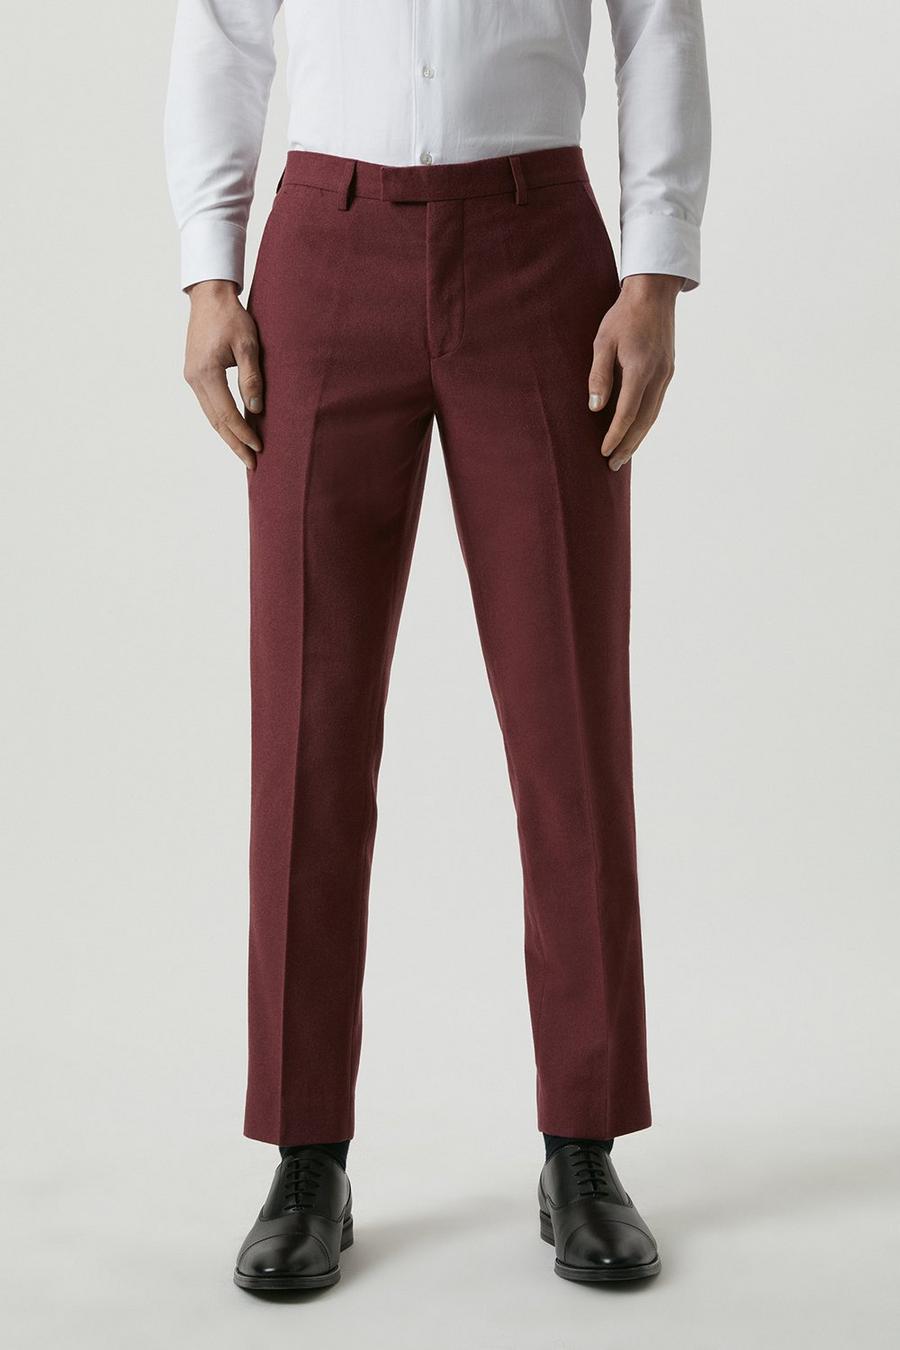 Slim Fit Burgundy Tweed Suit Trousers